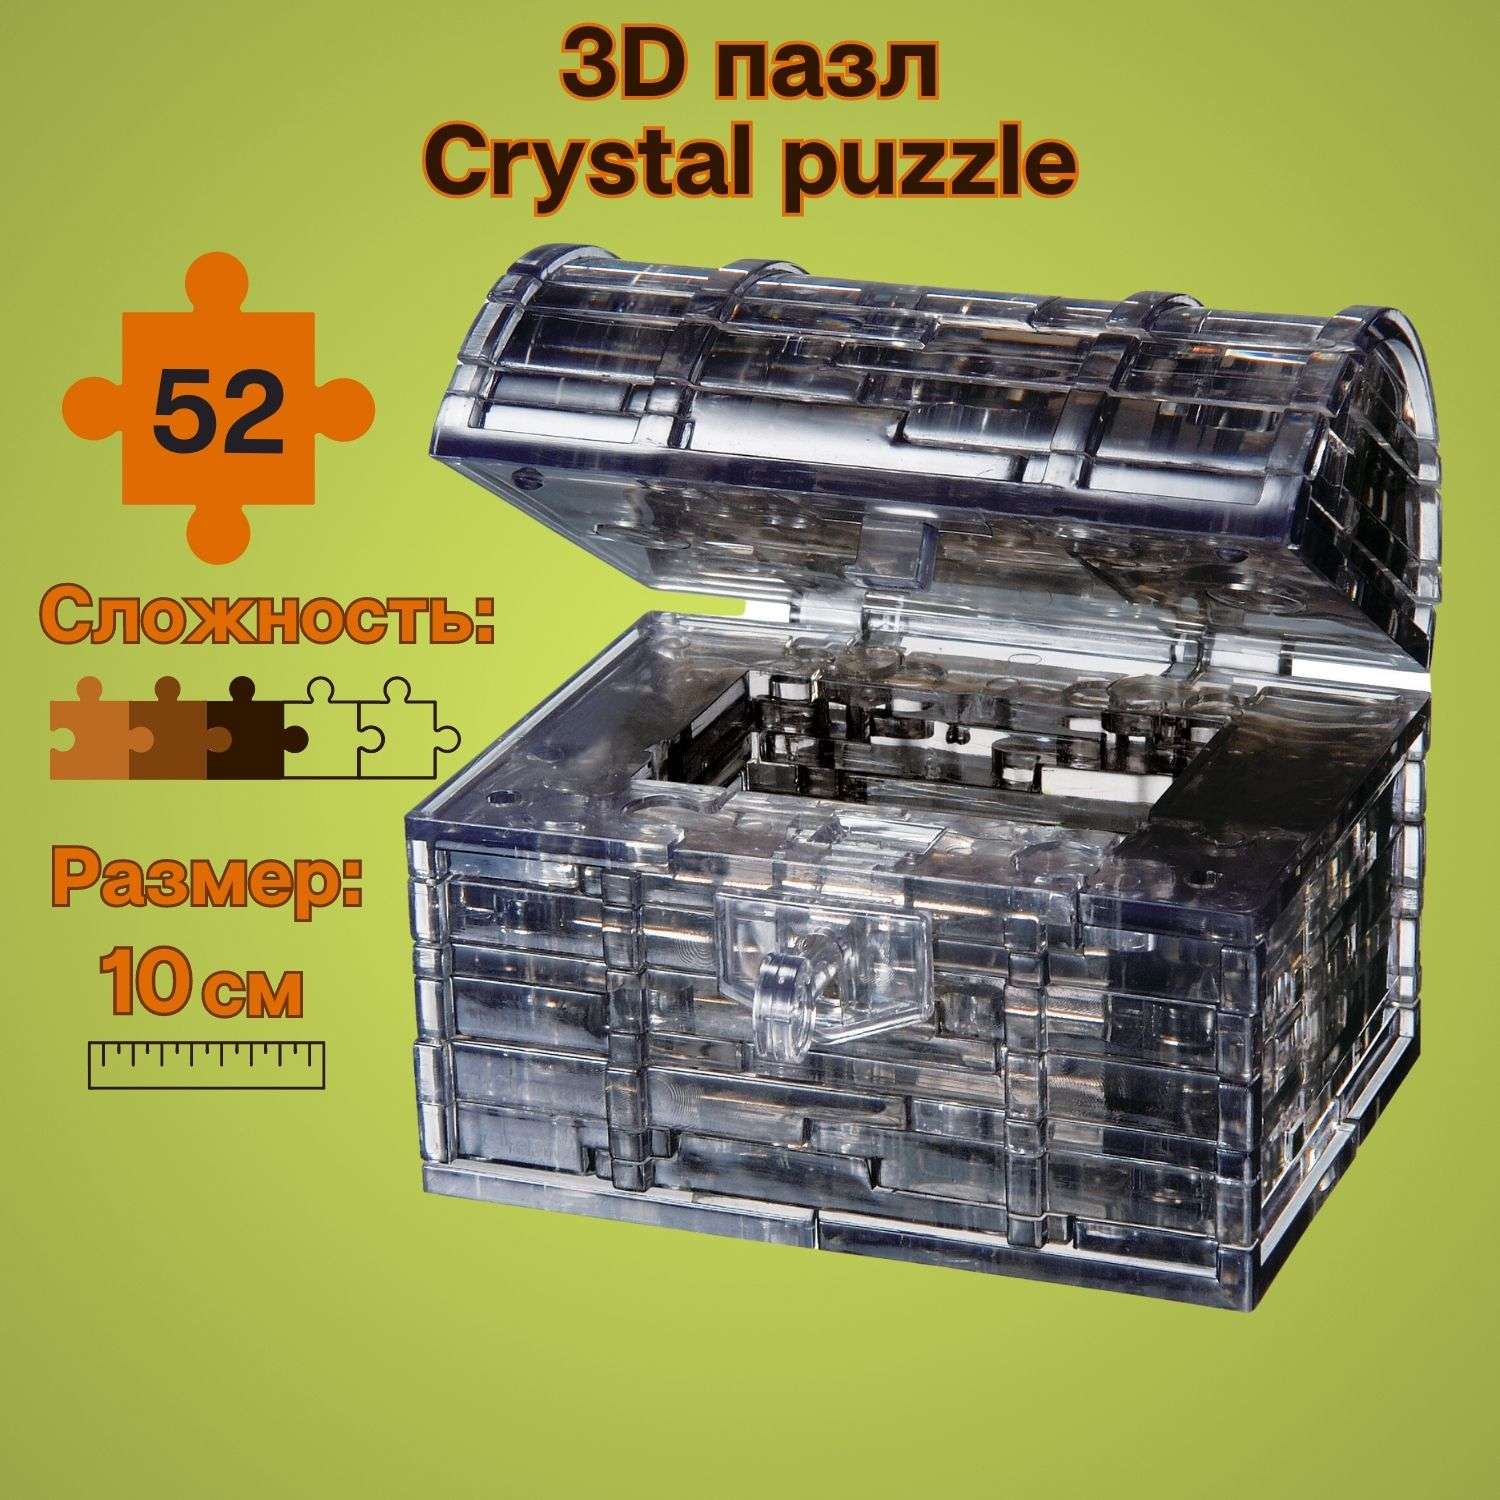 3D-пазл Crystal Puzzle IQ игра для детей кристальный Пиратский сундук 52 детали - фото 1